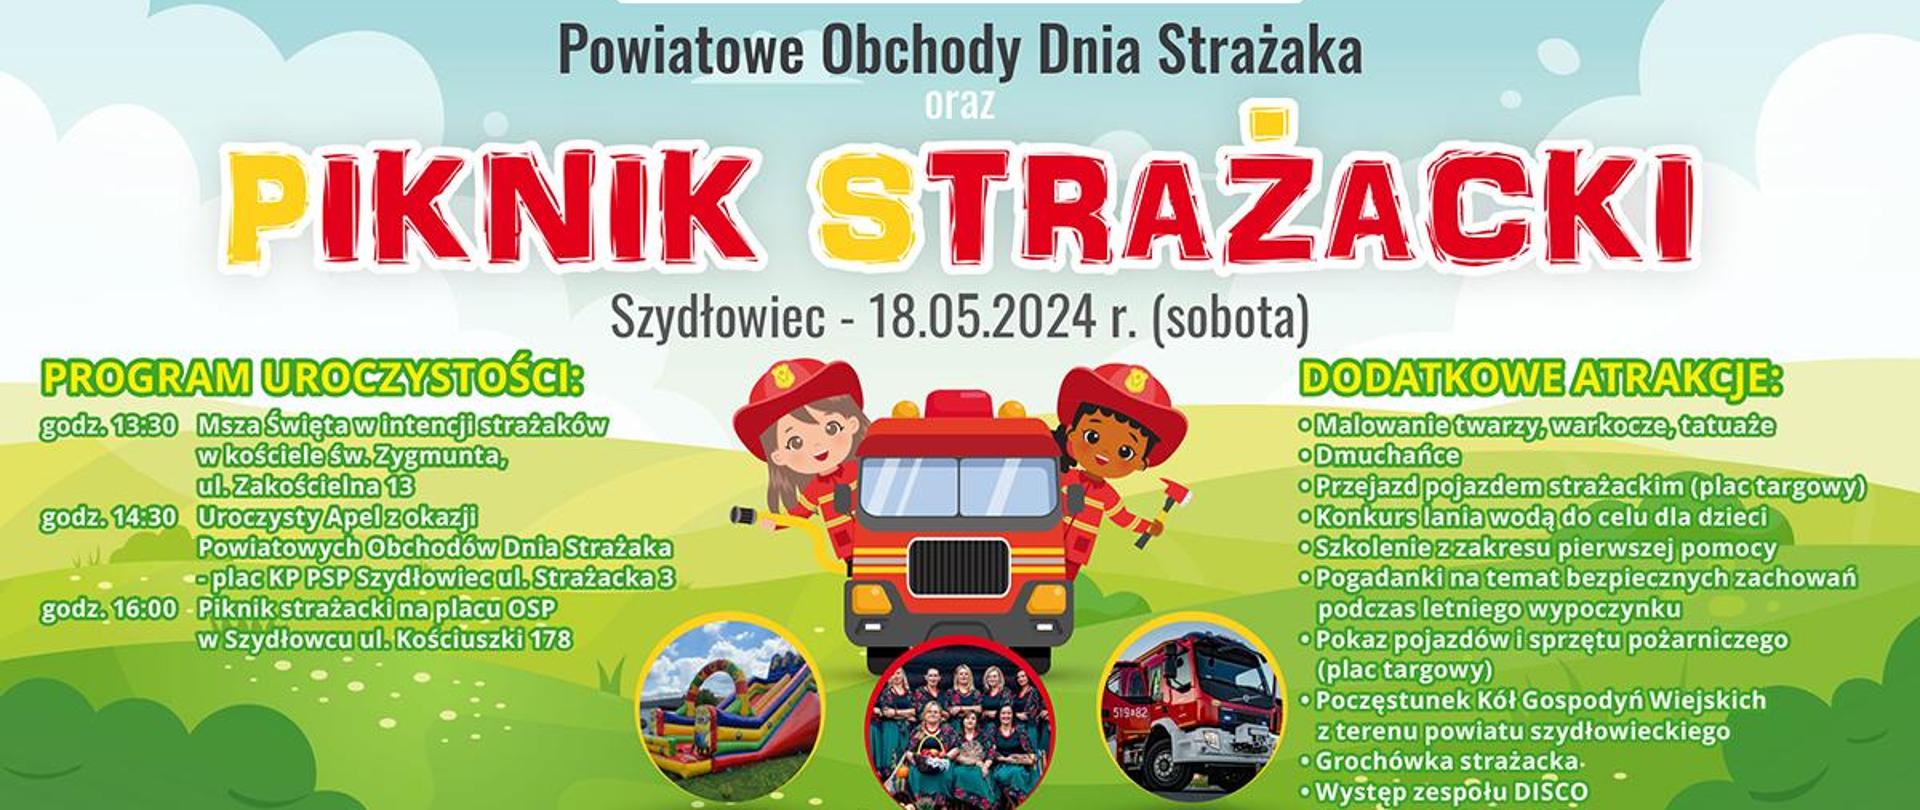 Powiatowe Obchody Dnia Strażaka plakat